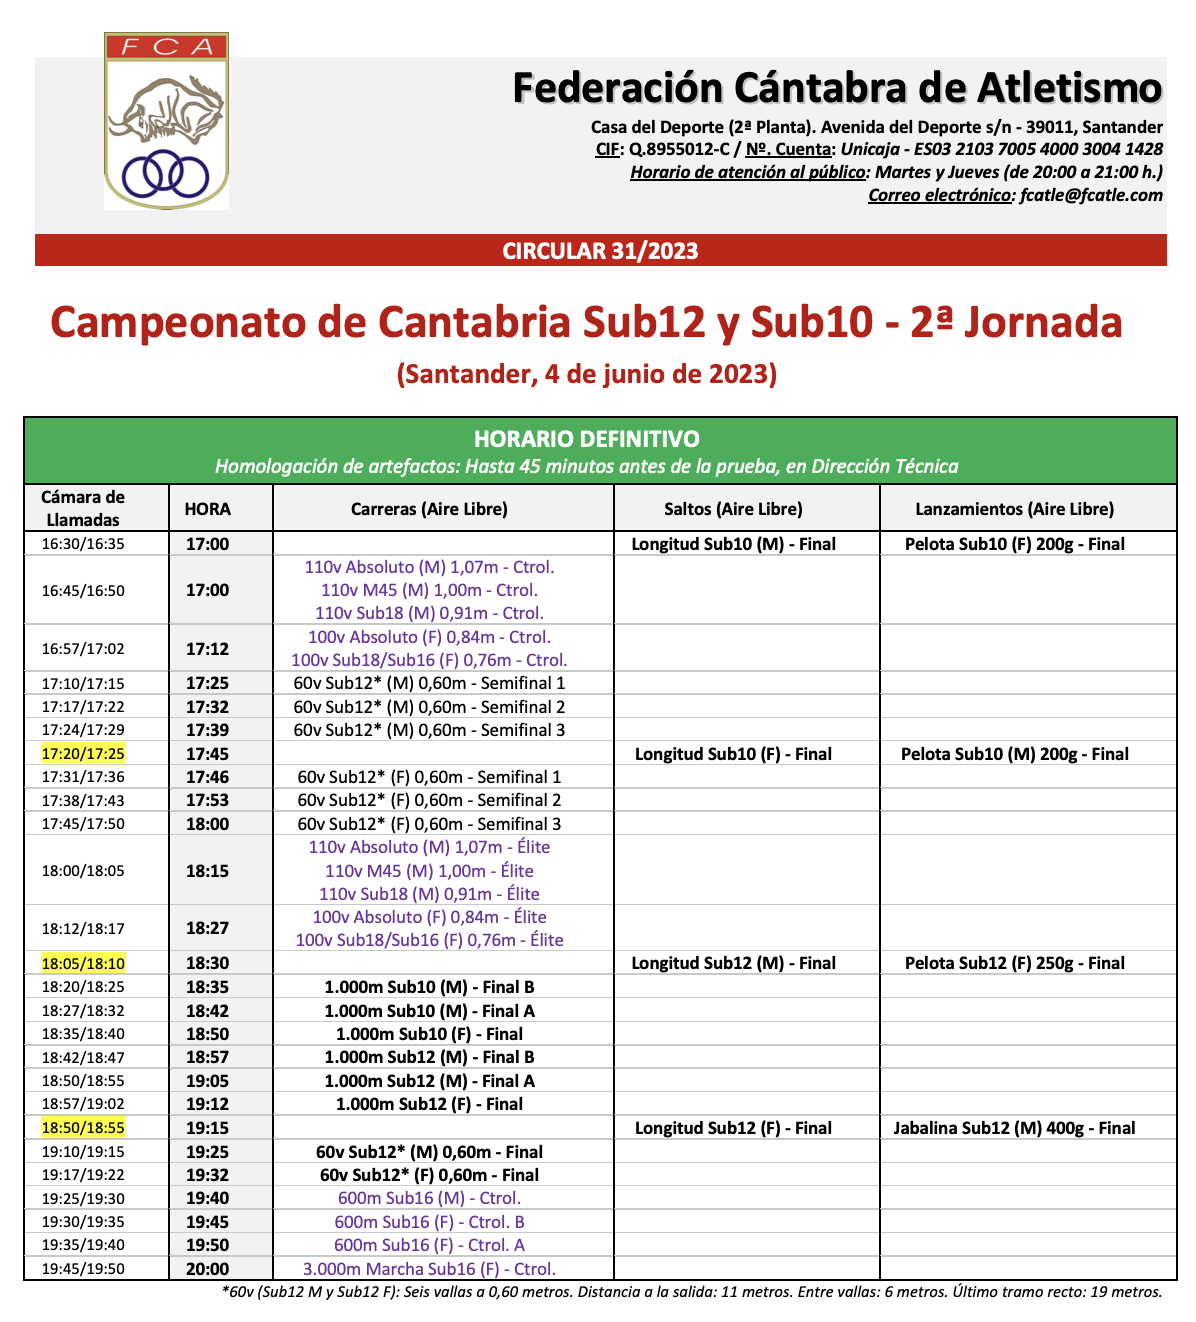 Campeonato de Cantabria Sub12 y Sub10 - 2ª Jornada @ Santander, Cantabria